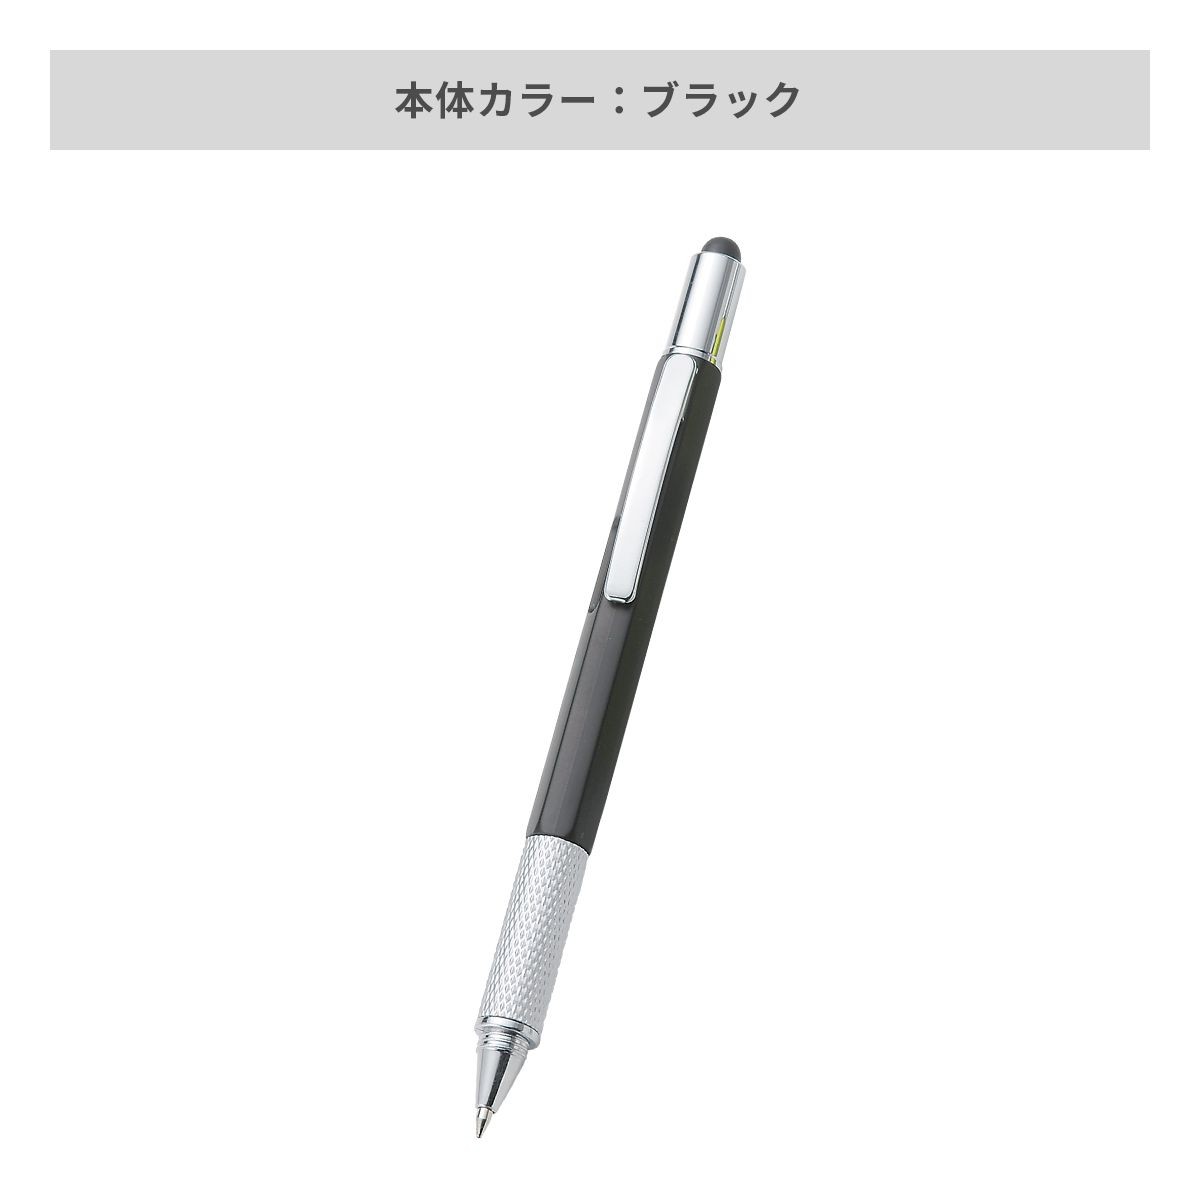 タッチペン付マルチツールペン【多機能ペン / パッド印刷】 画像5